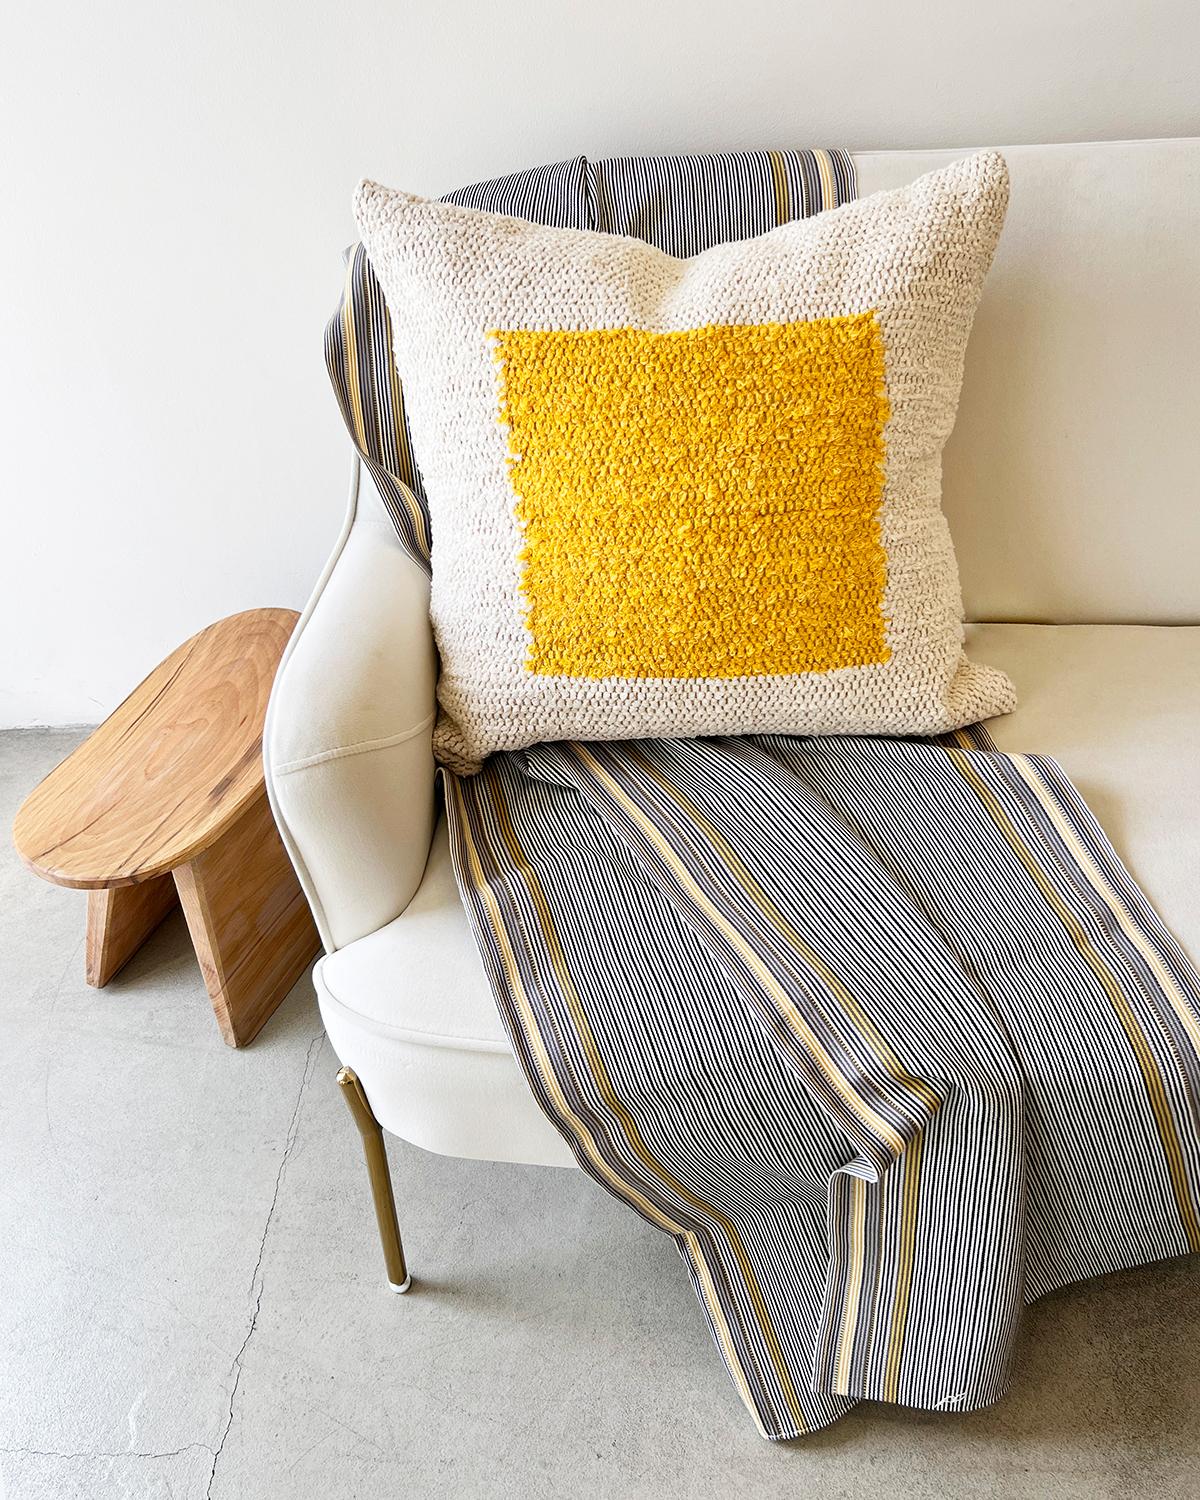 Un coussin géométrique texturé pour votre canapé ou votre lit. Ce coussin jeté en coton jaune et crème est fabriqué à partir de ce coton tissé à la main et est parfait pour une zone à fort trafic comme le canapé du salon. Placez deux coussins